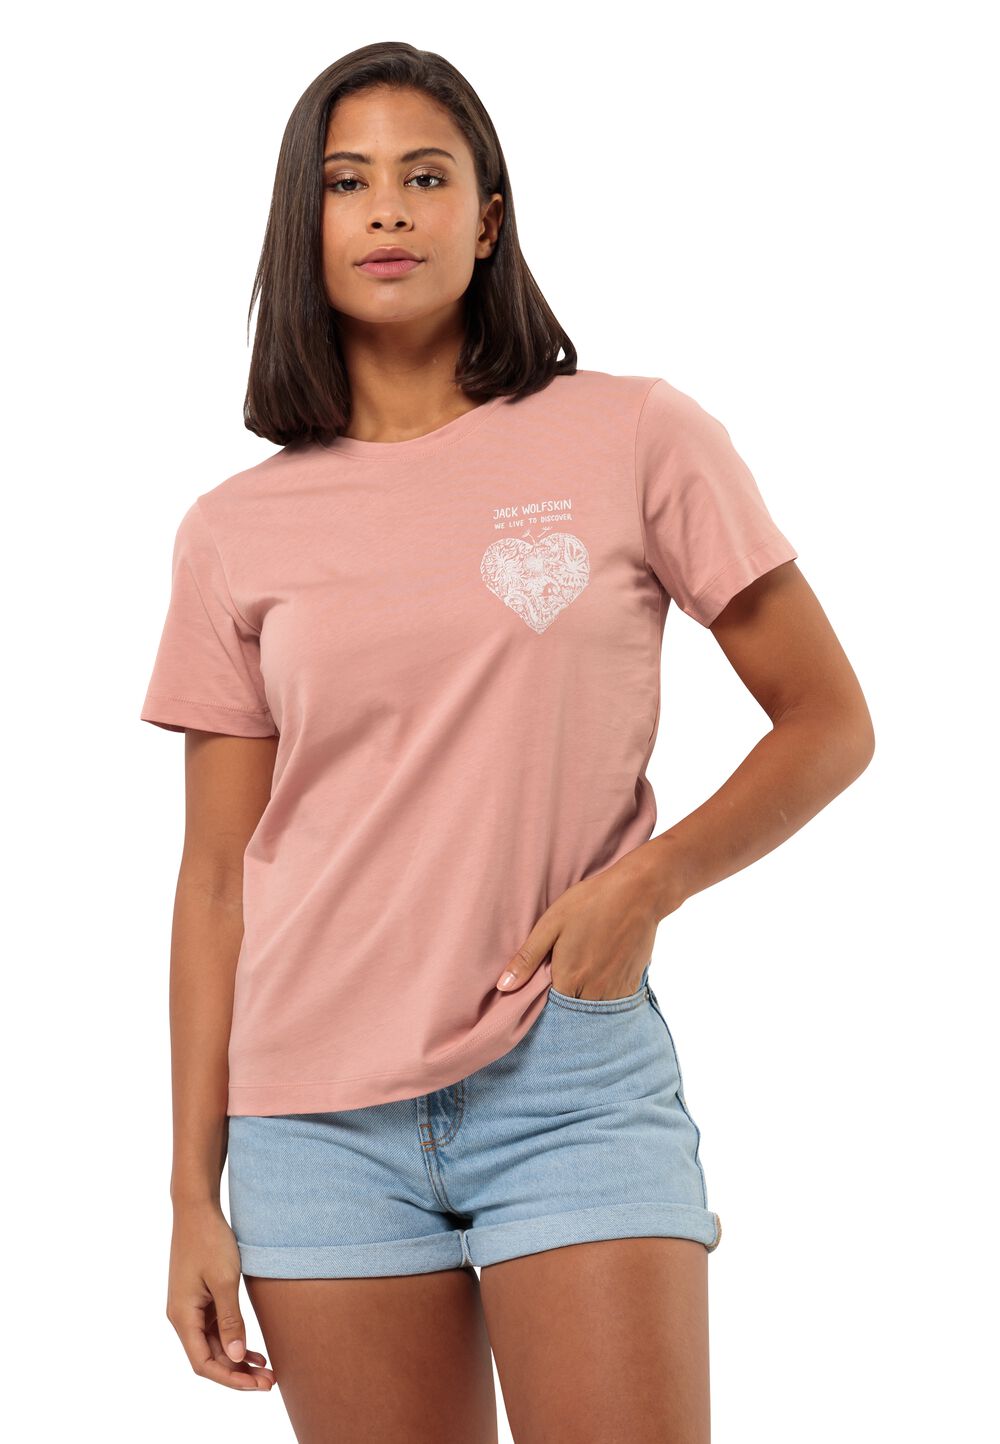 Jack Wolfskin T-Shirt aus Bio-Baumwolle Damen Discover Heart T-Shirt Women S braun rose dawn von Jack Wolfskin